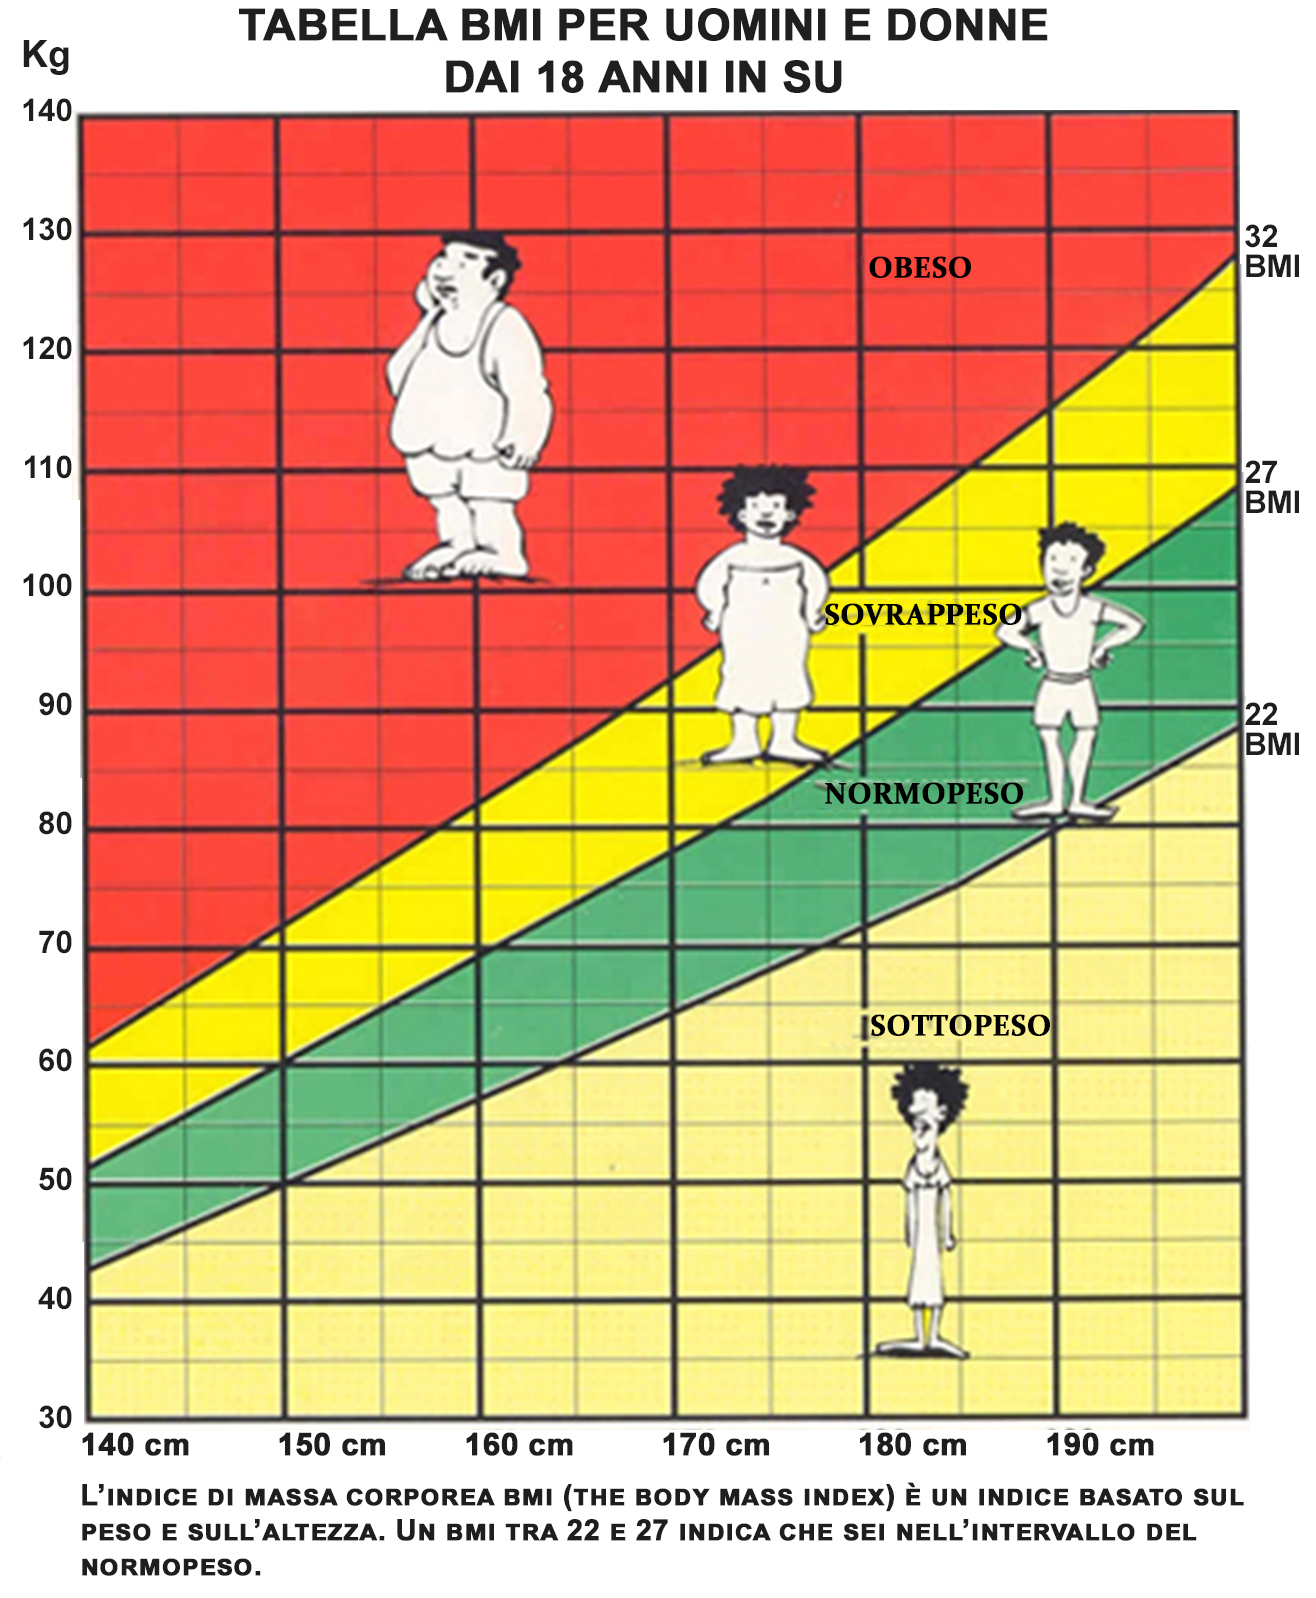 Height wp. Соотношение роста и веса. Шкала роста и веса. Нормальный вес тела в зависимости от роста. График соотношения роста и веса.